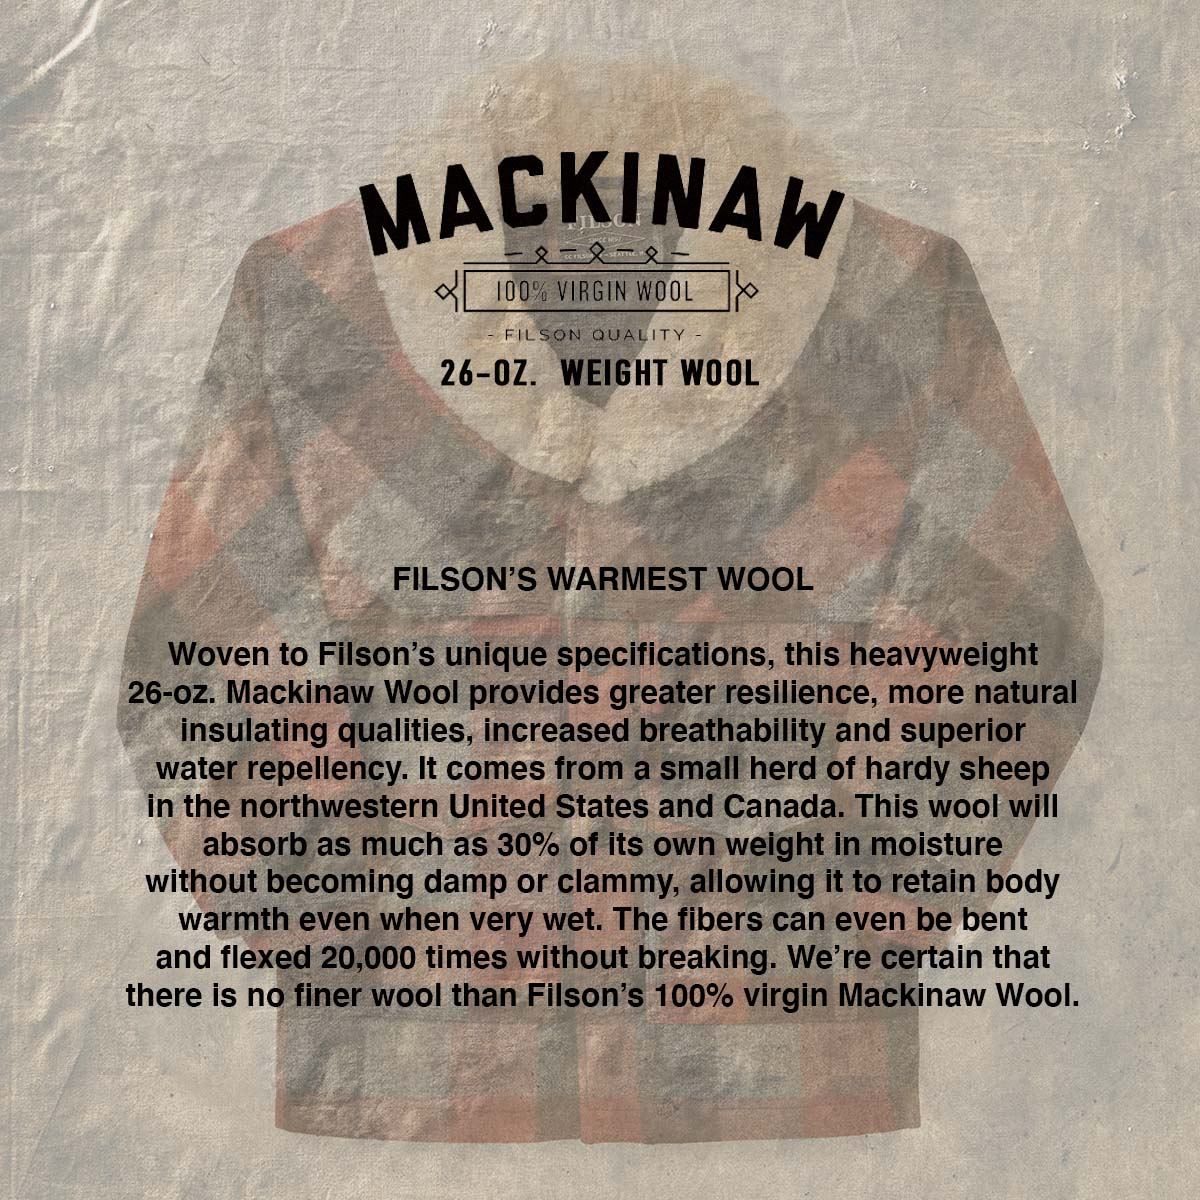 Filson Lined Wool Packer Coat Black/Charcoal/Rust, gemaakt met scheerwol voor comfort, natuurlijke waterafstotendheid en isolerende warmte in alle weersomstandigheden